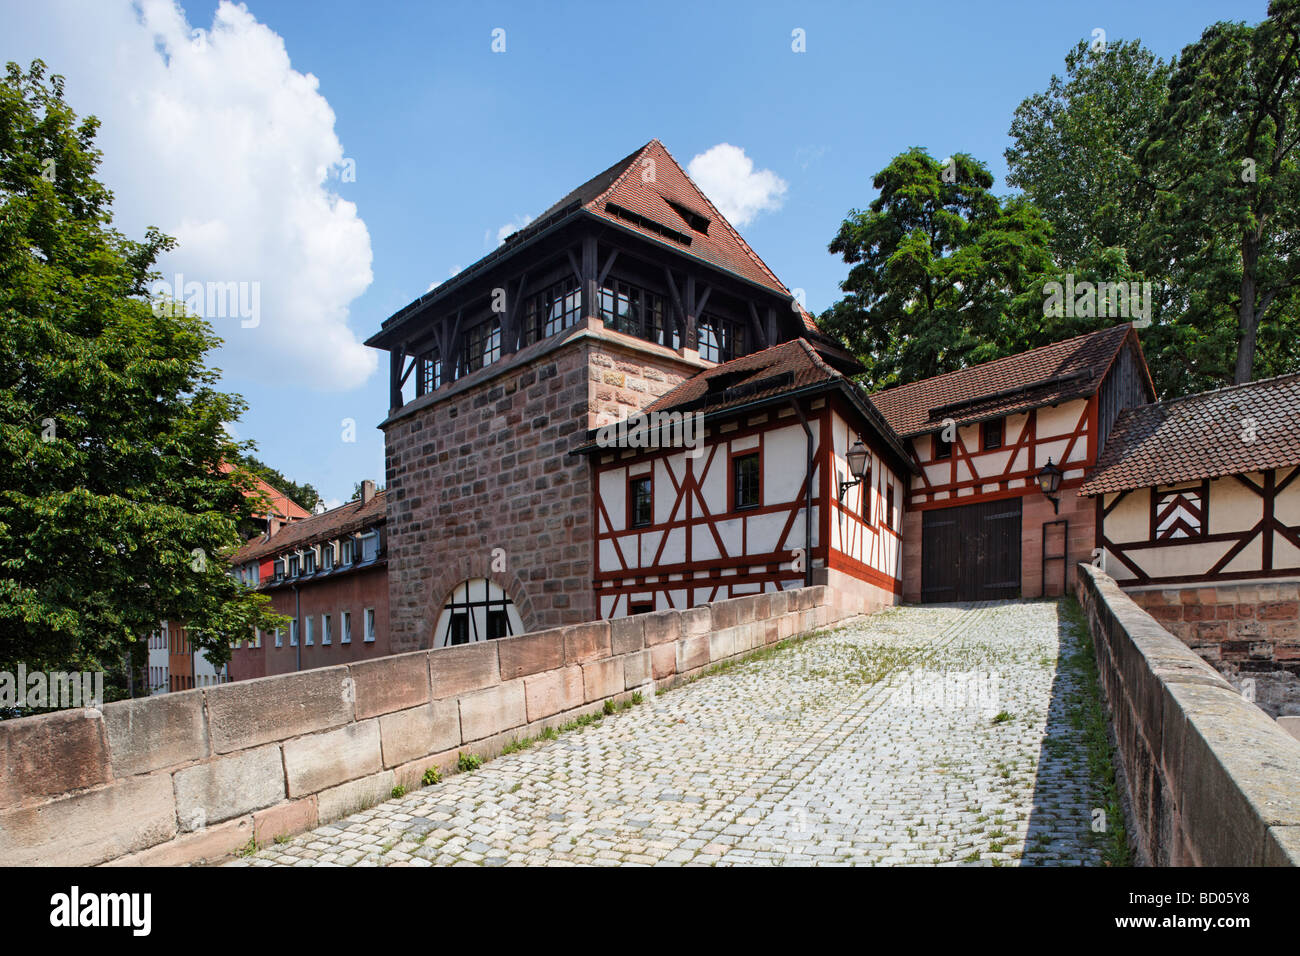 Torre fortificata Tratzenzwinger, Kakauer House, ristorante, mura, Hintere Insel Schuett, la città vecchia, Altstadt, città di Nuremb Foto Stock